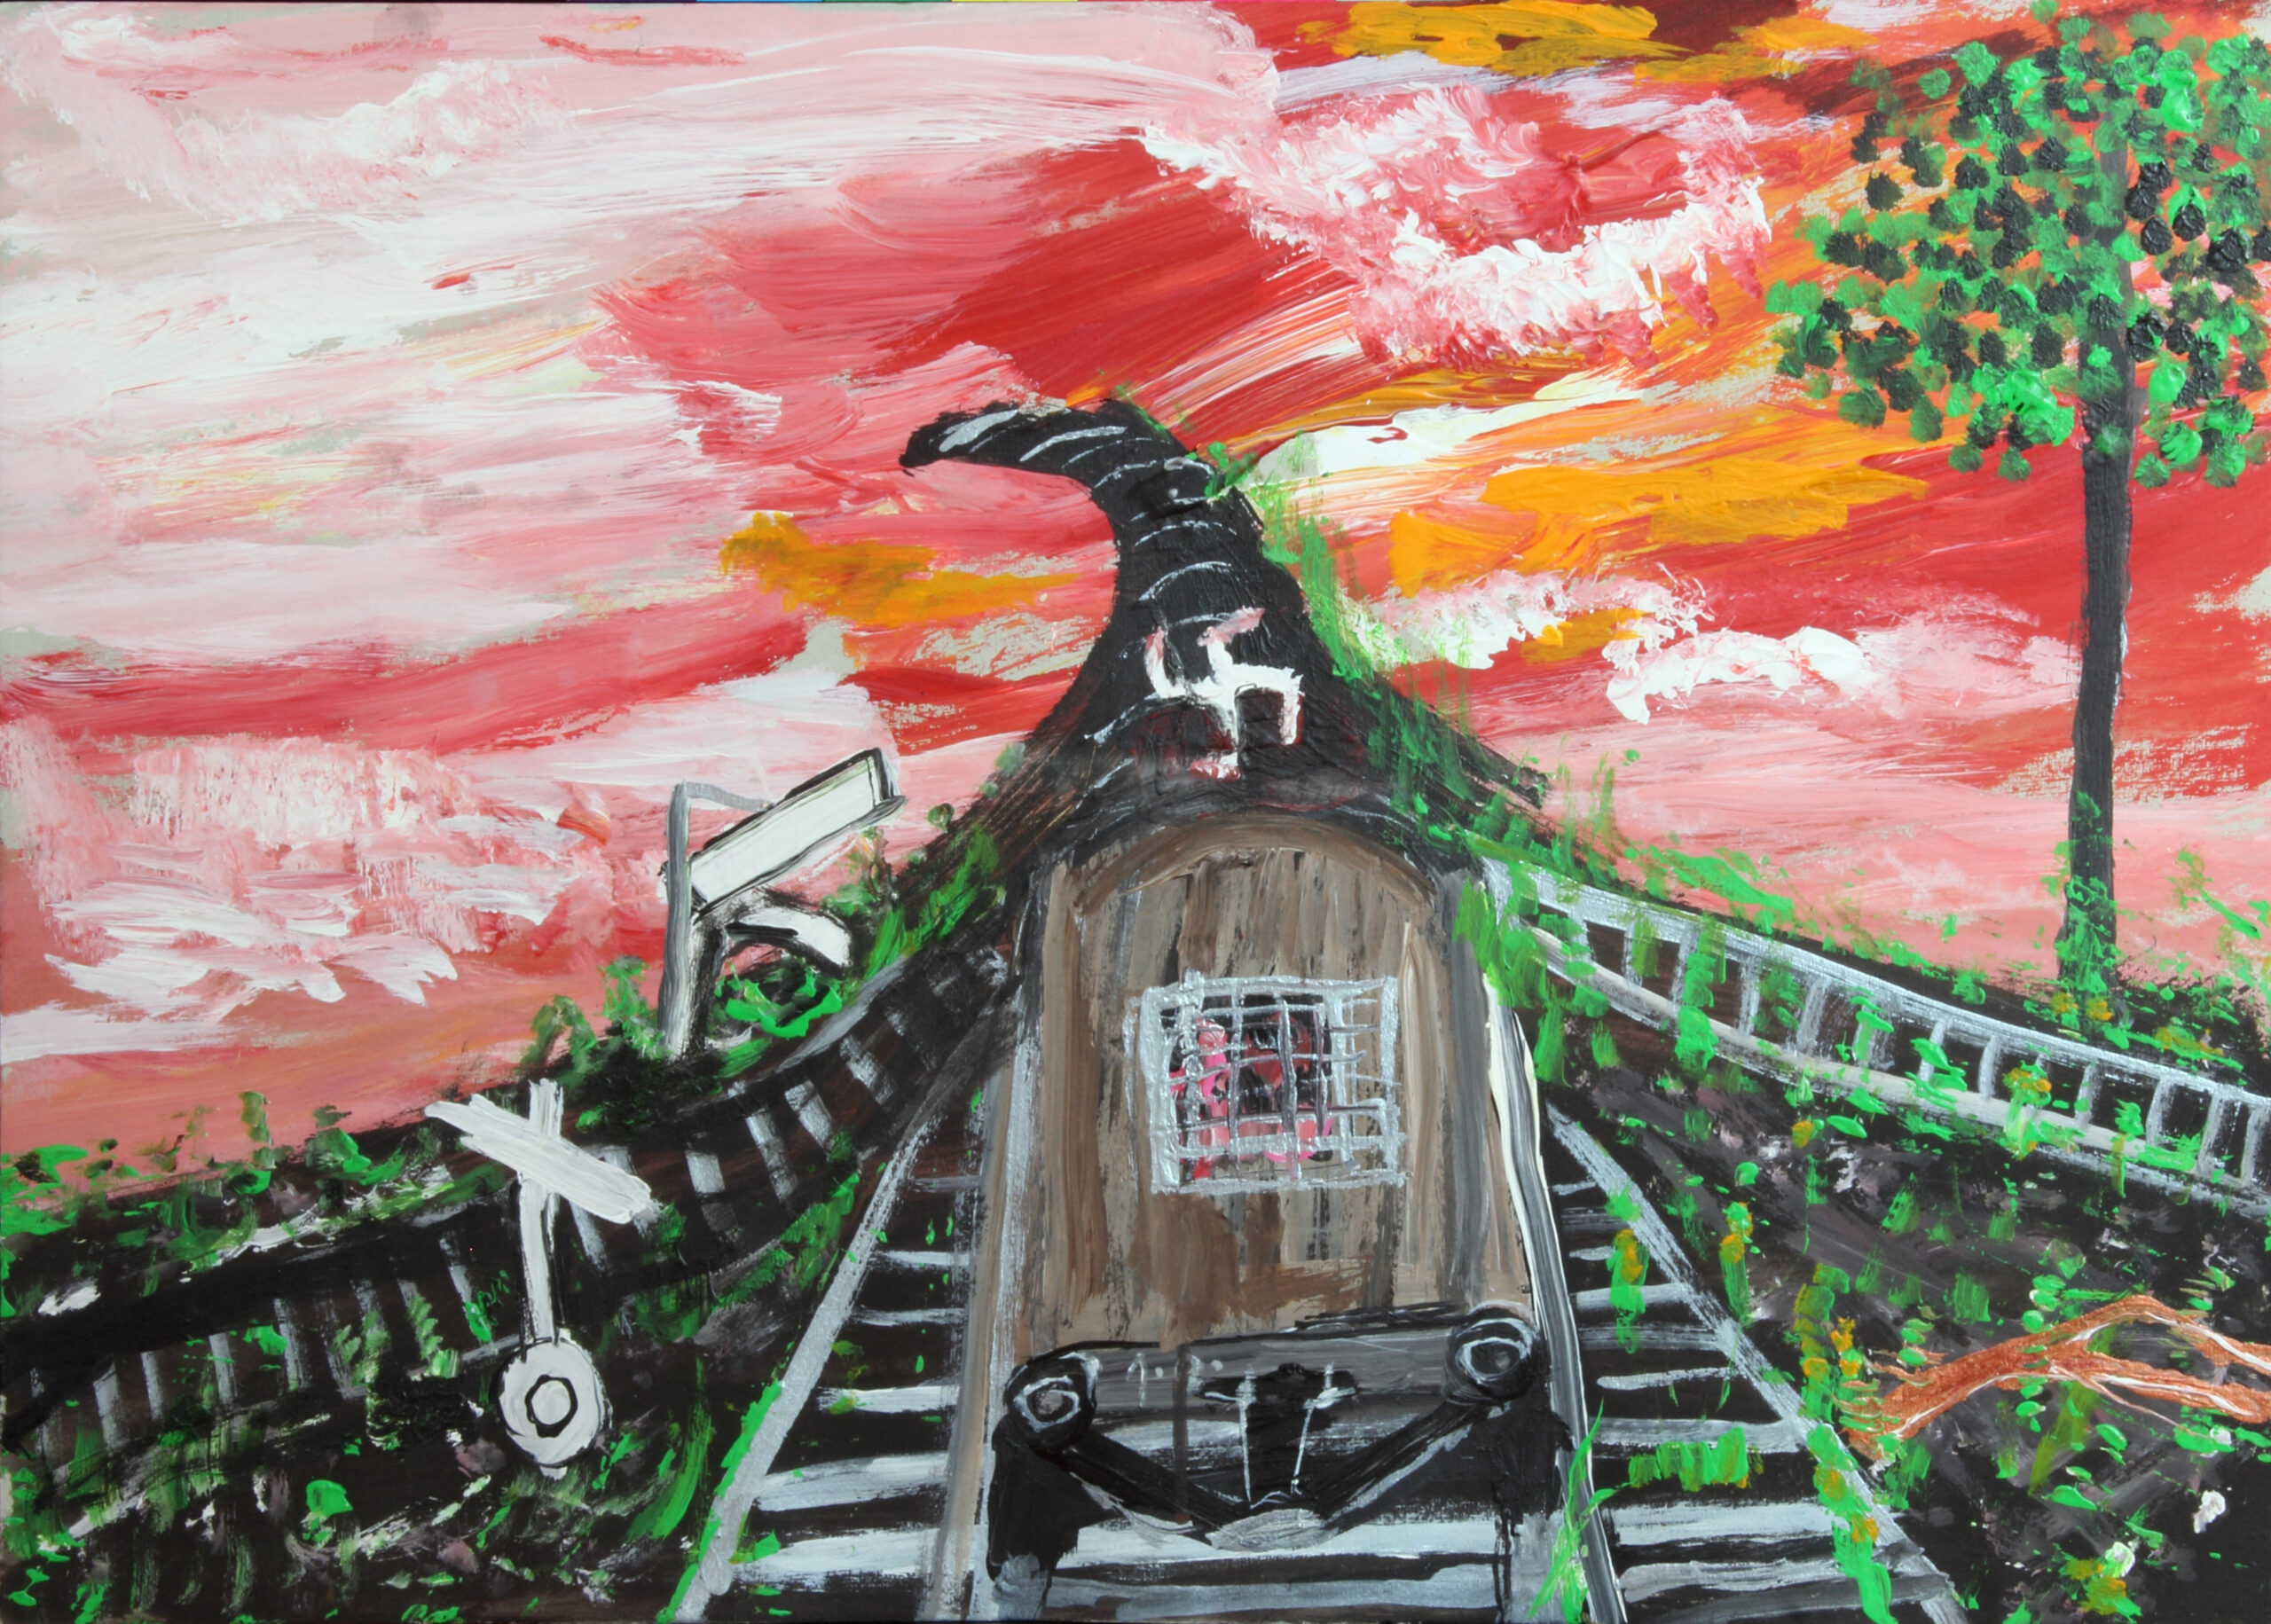 målning i starka färger. ett brunt tåg, med svastika symbol, åker på ett räls. Himlen runt om kring är i röd färg